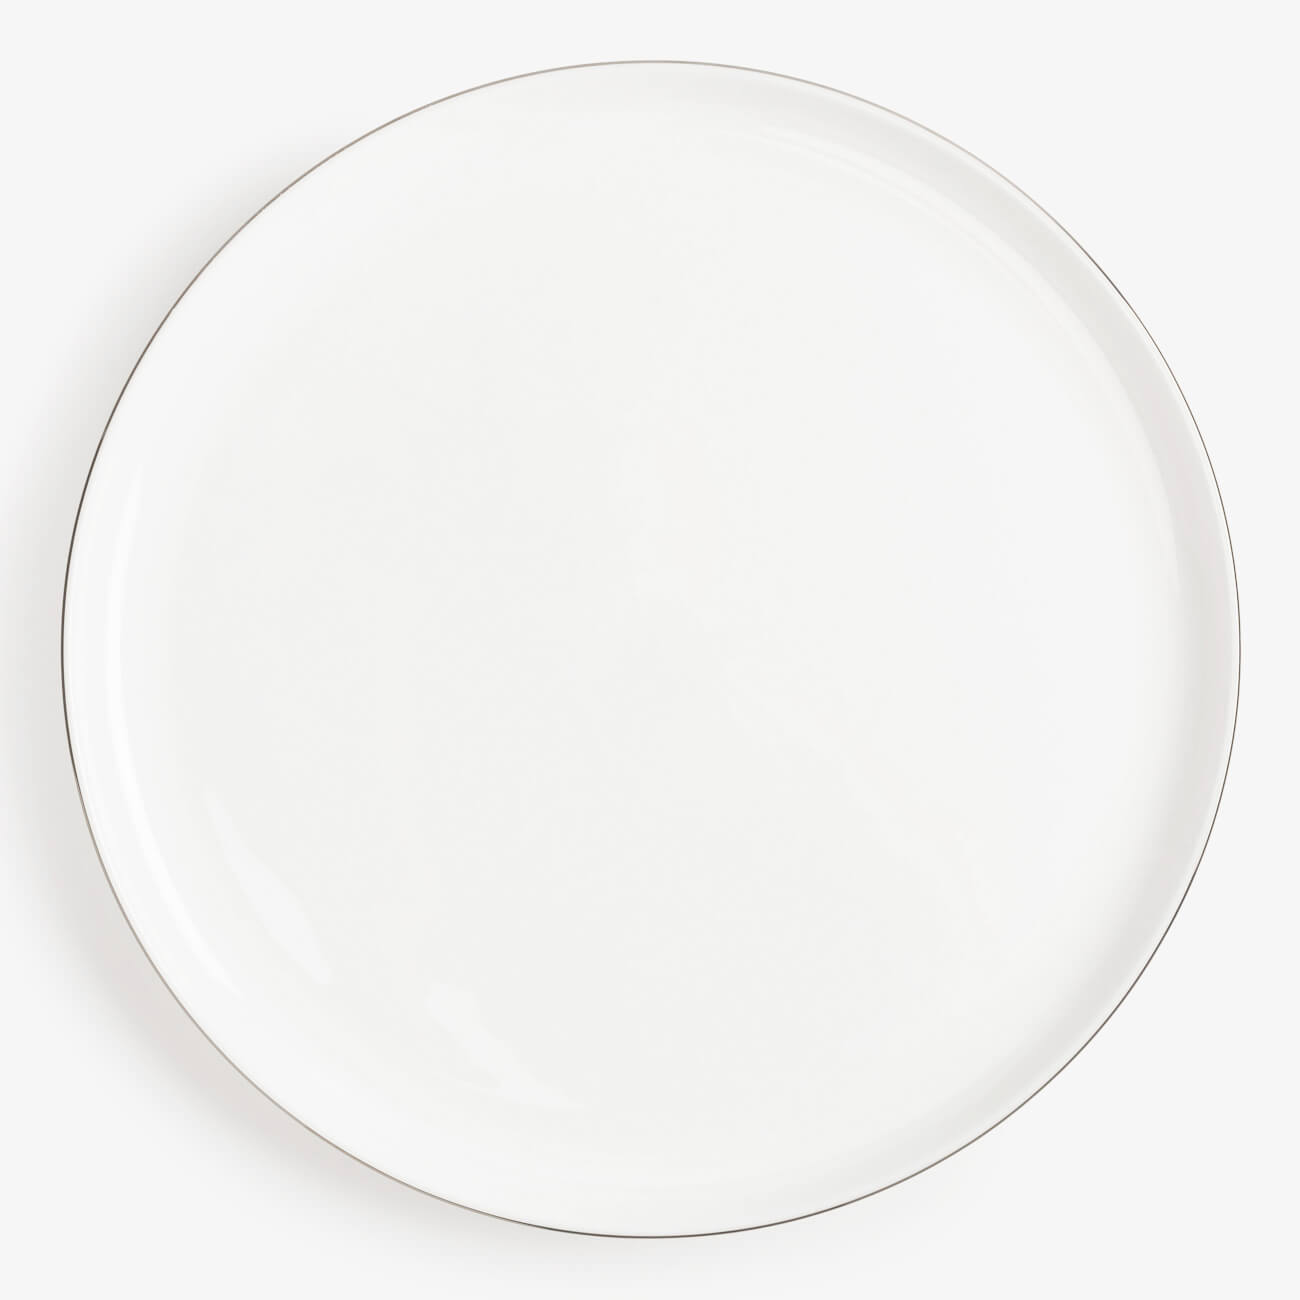 Тарелка обеденная, 28 см, фарфор F, Antarctica тарелка обеденная фарфор 23 см круг estepario apollo esr 23